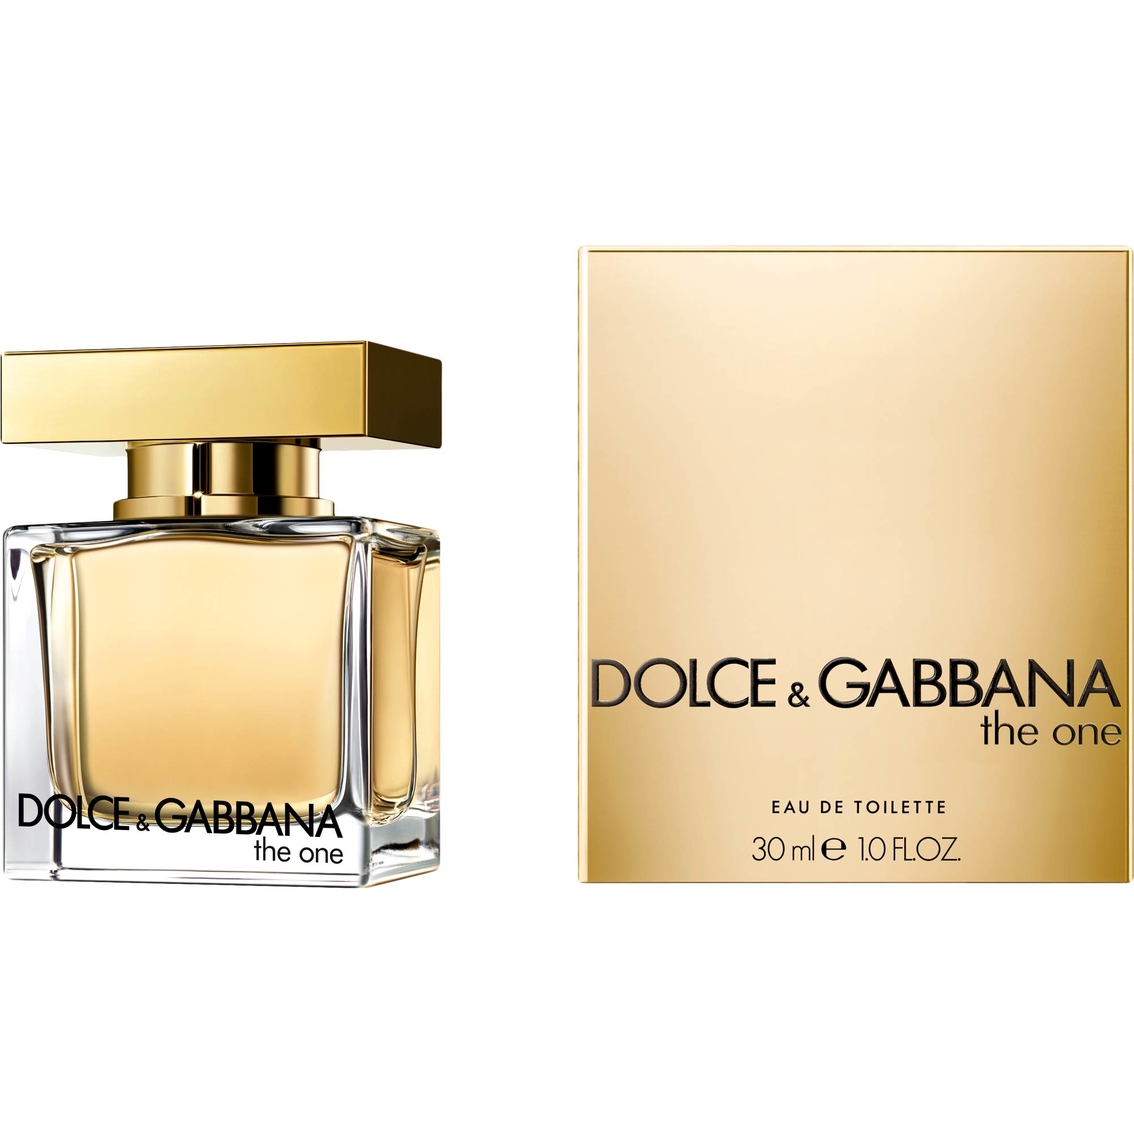 Dolce & Gabbana The One Eau De Toilette 1.0 Oz. | Women's Fragrances ...